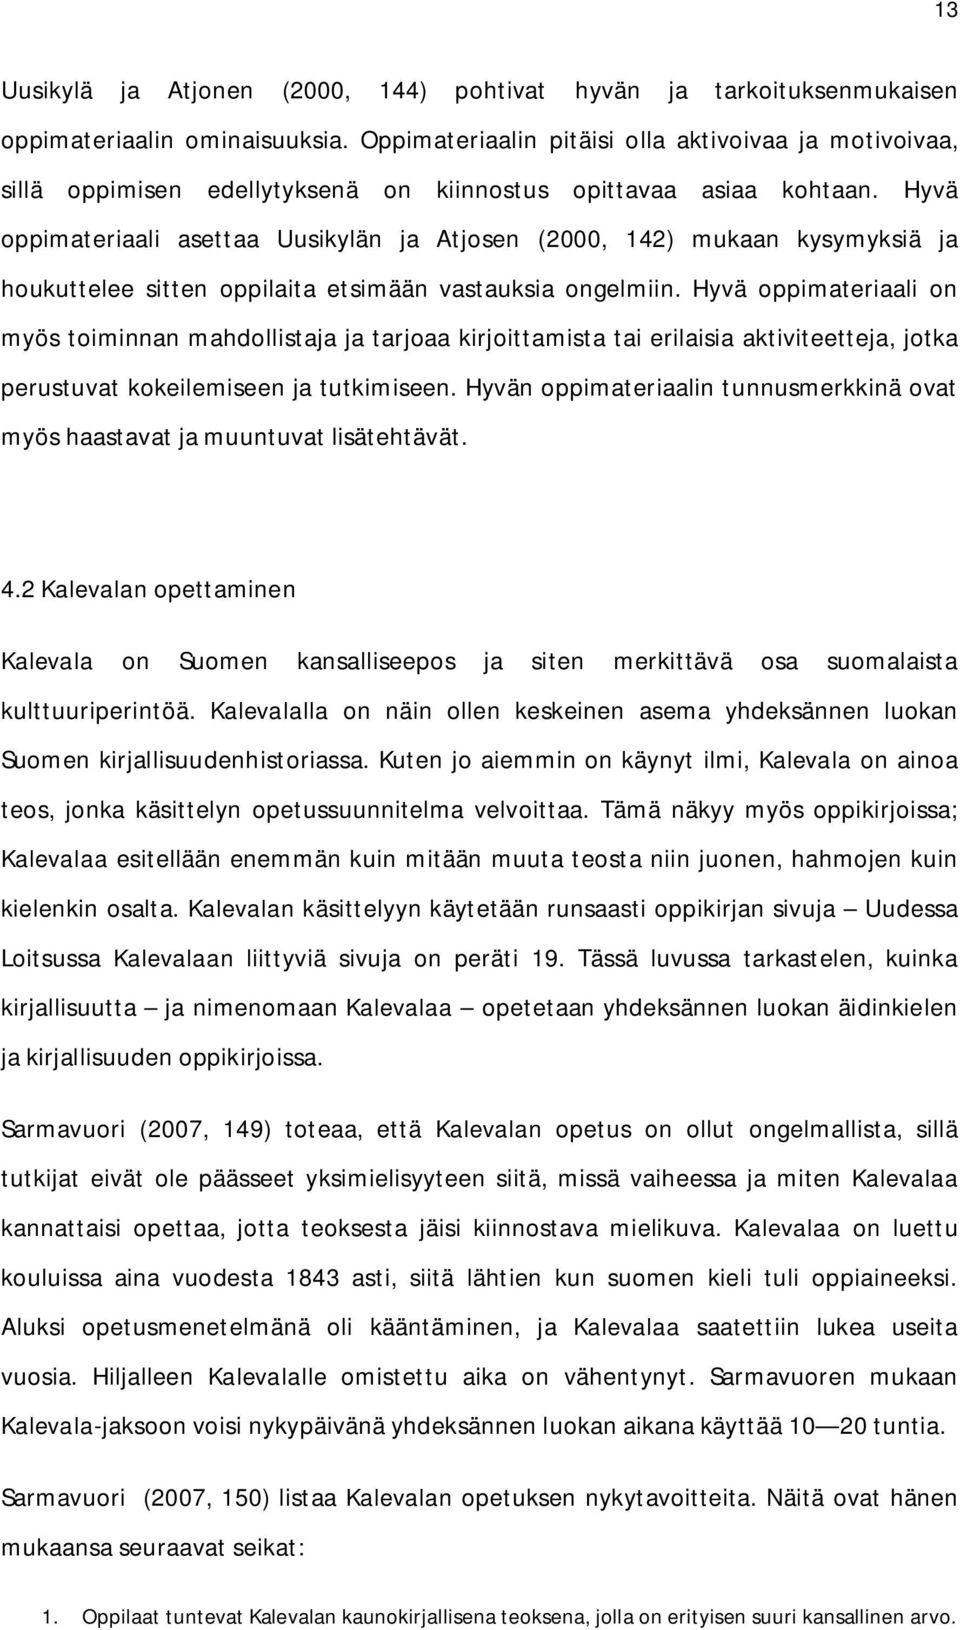 Hyvä oppimateriaali asettaa Uusikylän ja Atjosen (2000, 142) mukaan kysymyksiä ja houkuttelee sitten oppilaita etsimään vastauksia ongelmiin.